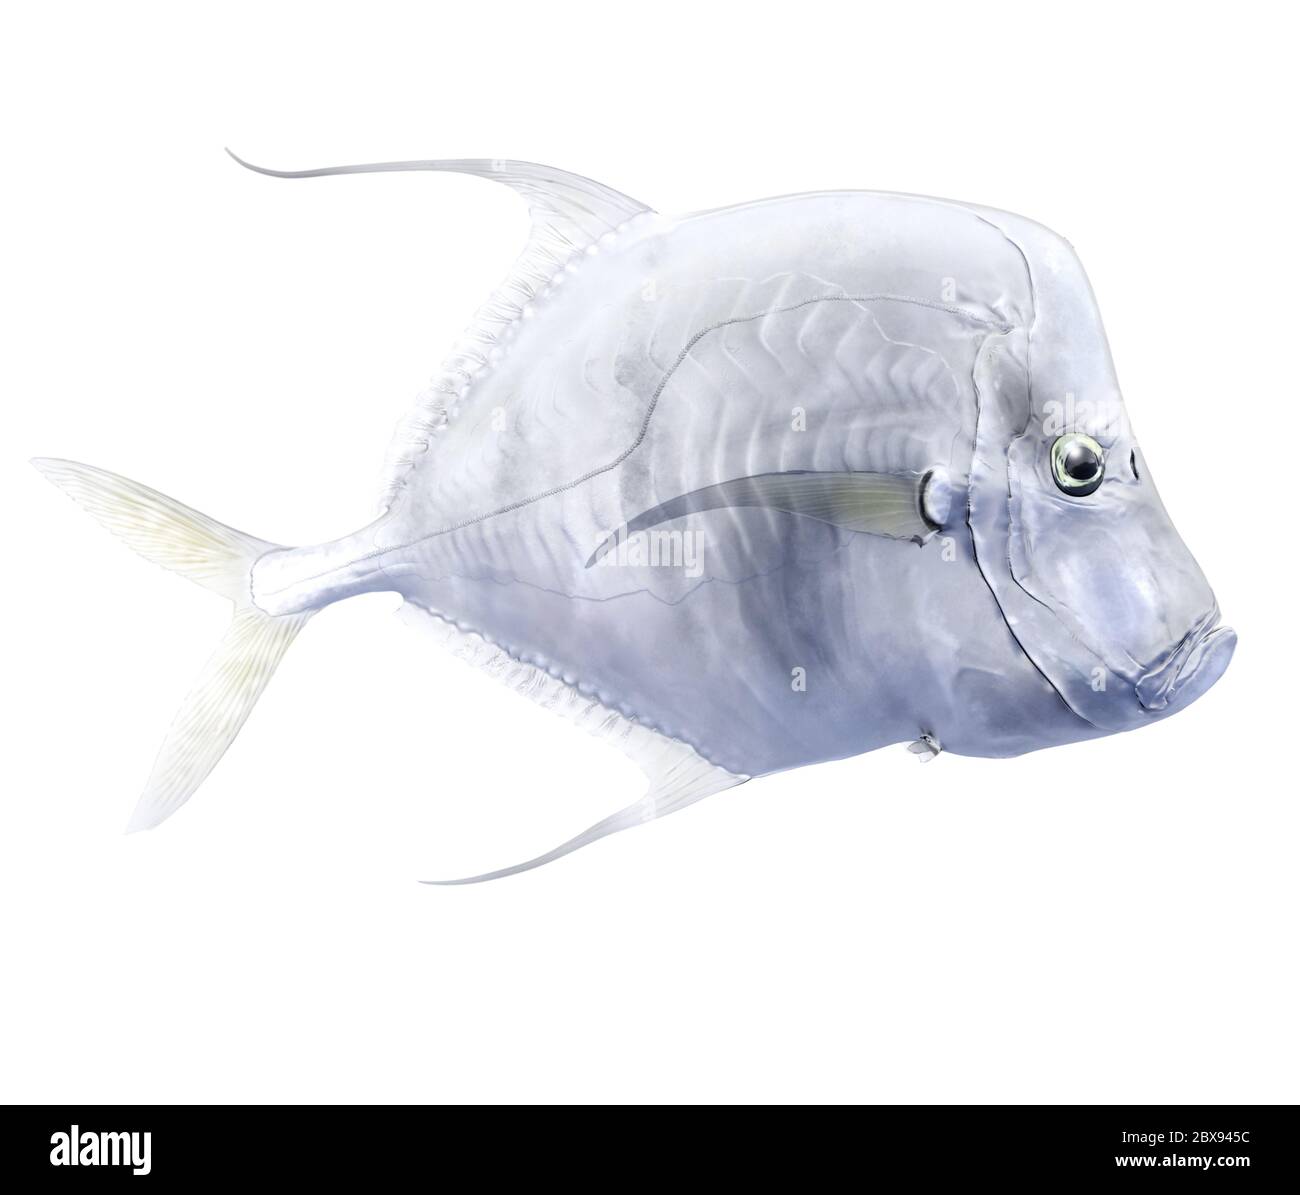 Ilustración de un pez mirado, un pez de caza de la familia Carangidae. Las escamas brillantes las hacen casi invisibles bajo el agua. Foto de stock